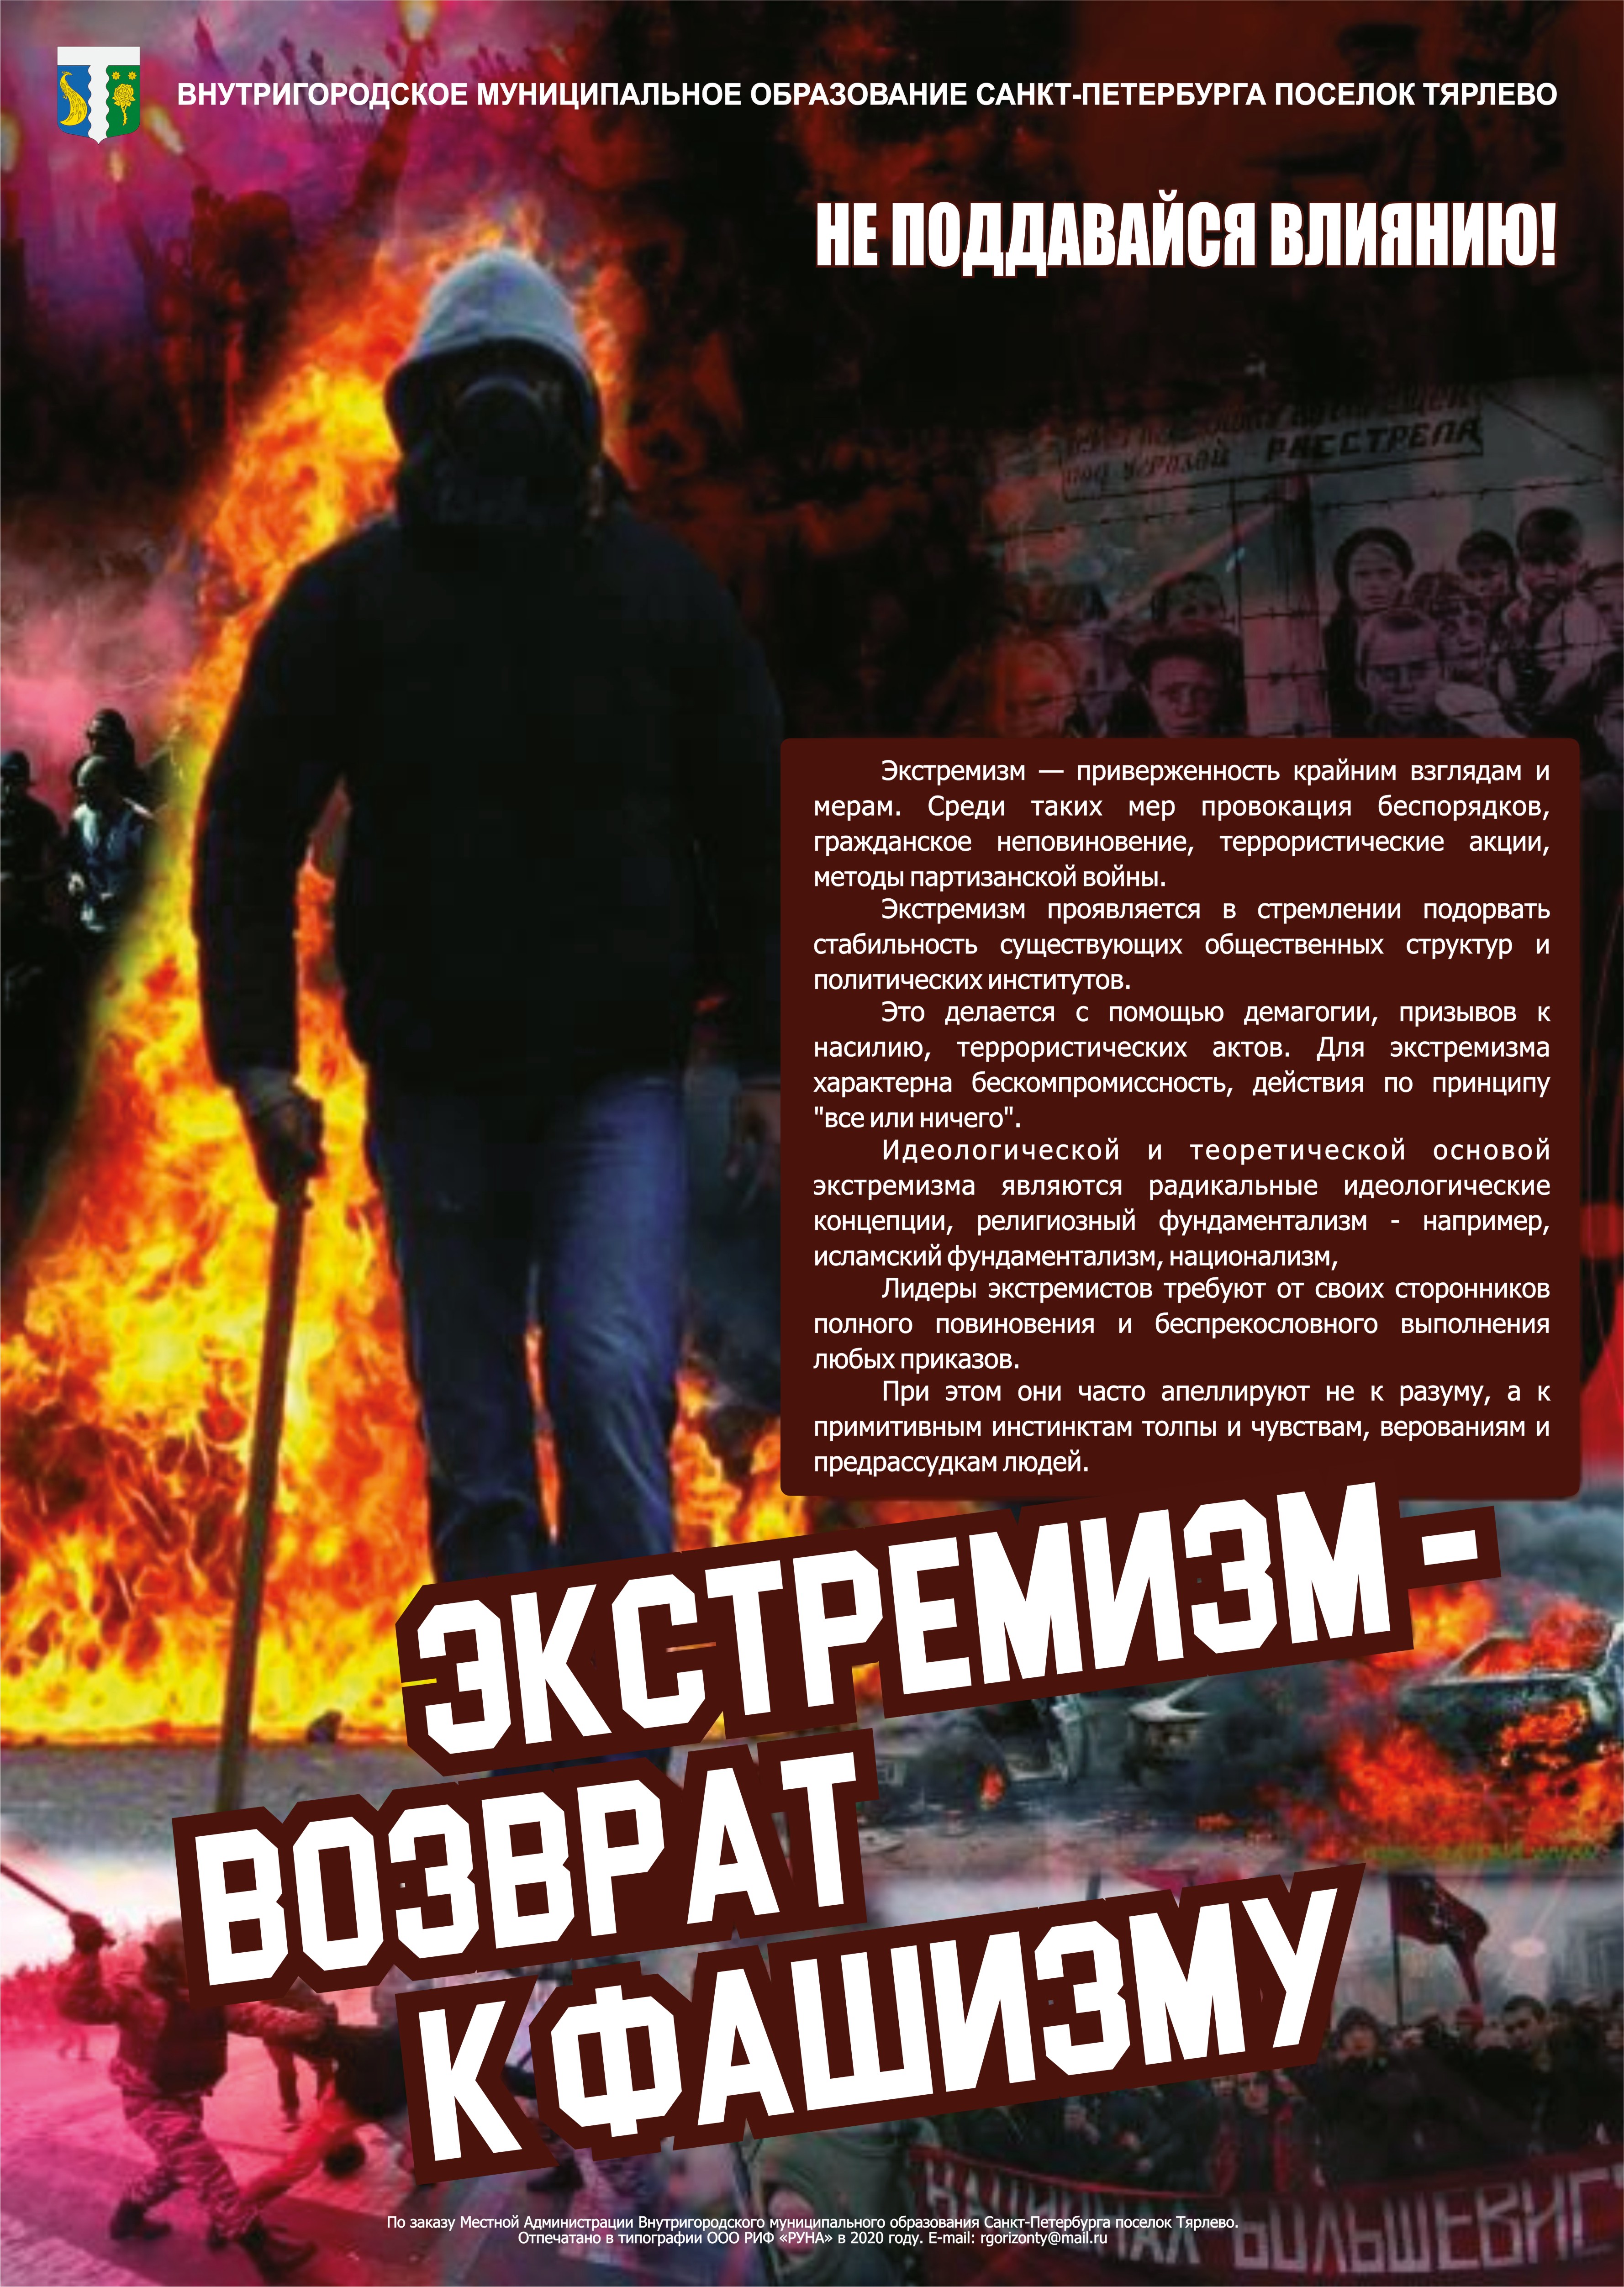 11. Плакат «Экстремизм – возврат к фашизму»